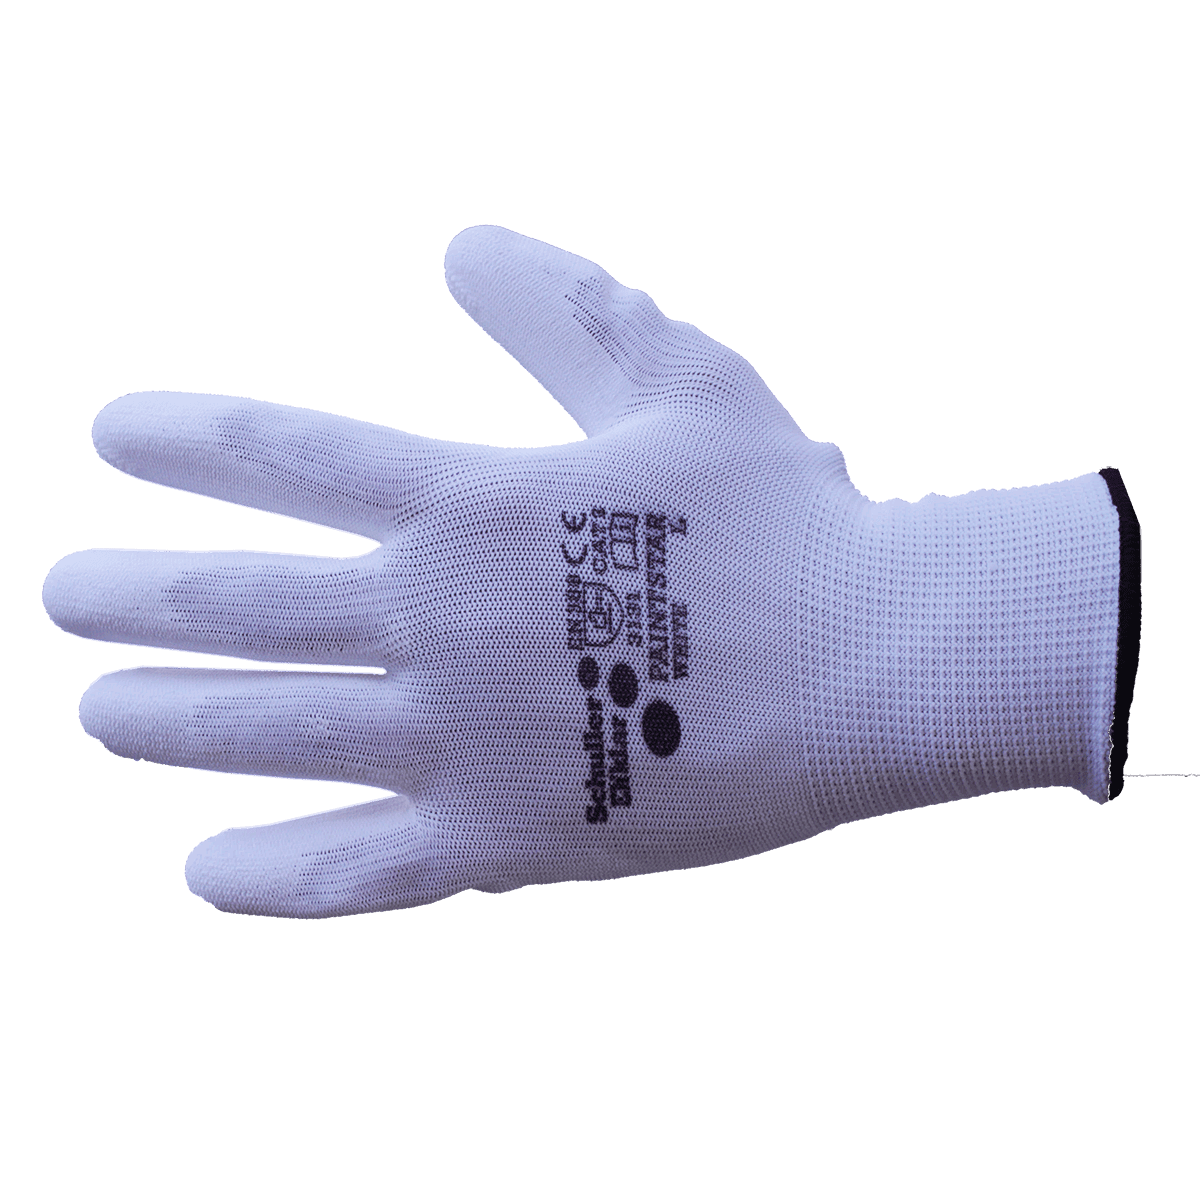 Schuller Eh´klar PAINT STAR Handschuhe Nylon Weiß S-M-L-XL-XXL Schutz Komfort 